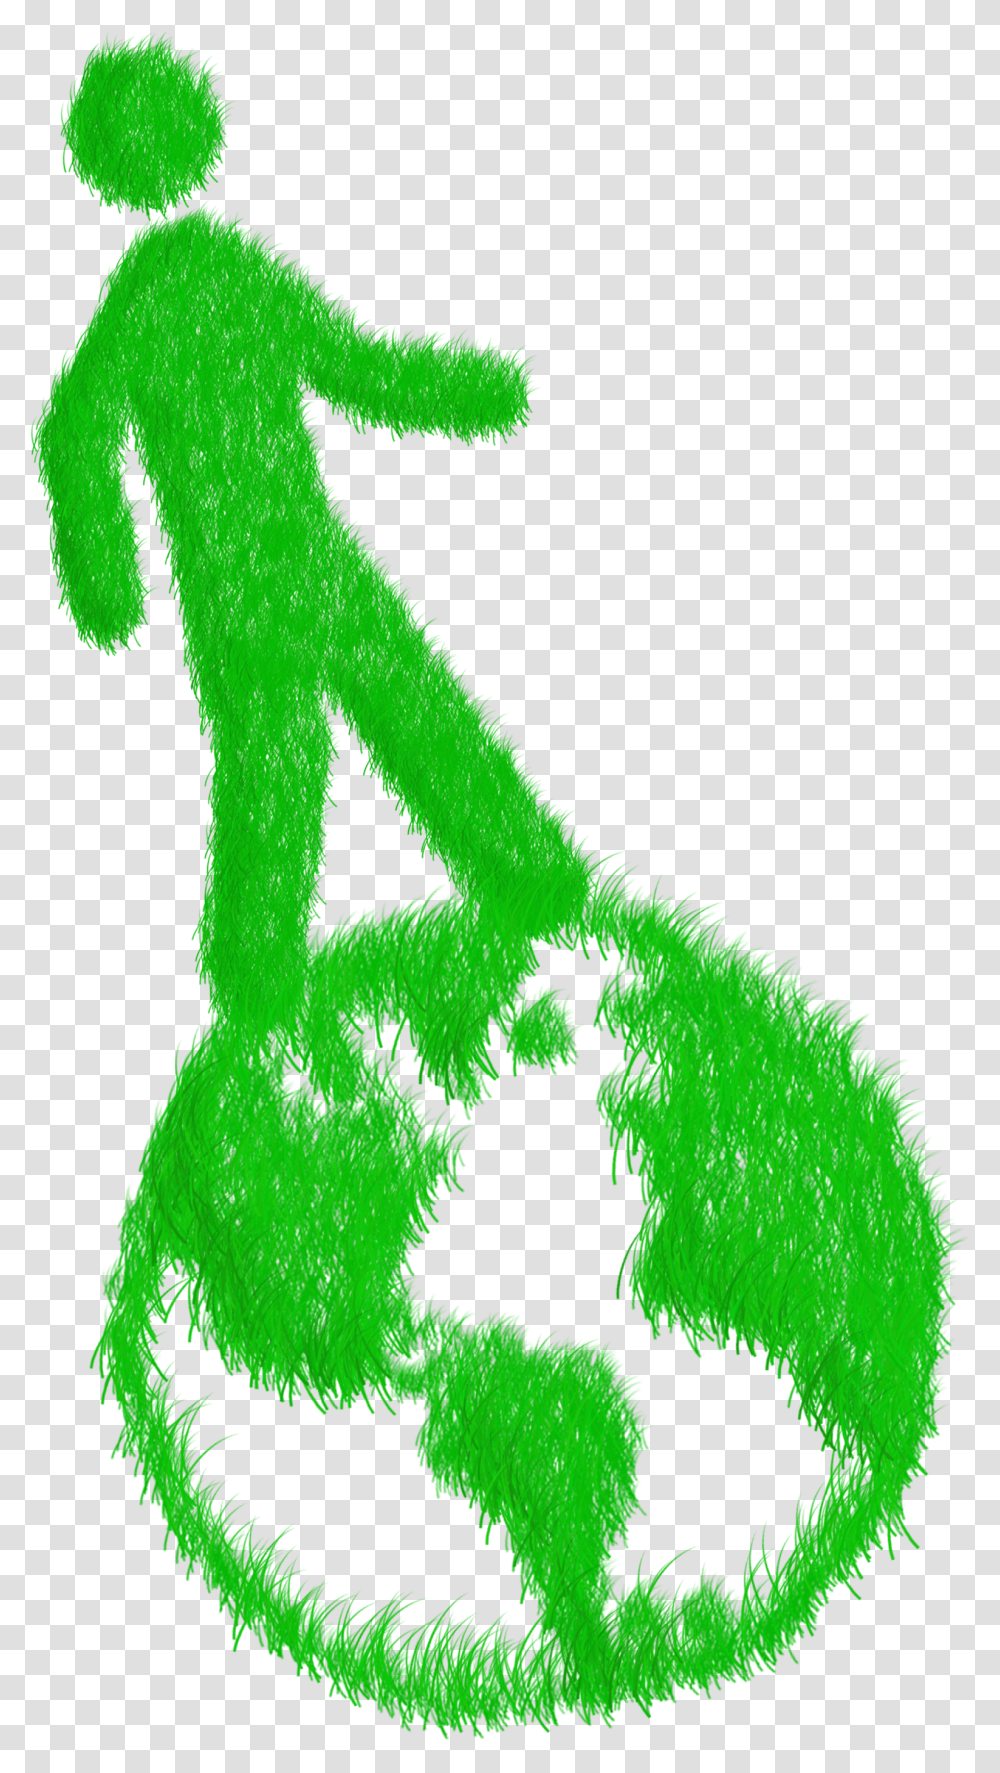 Green Grass Person Walking Nachhaltiges Reisen, Text, Symbol, Bird, Animal Transparent Png